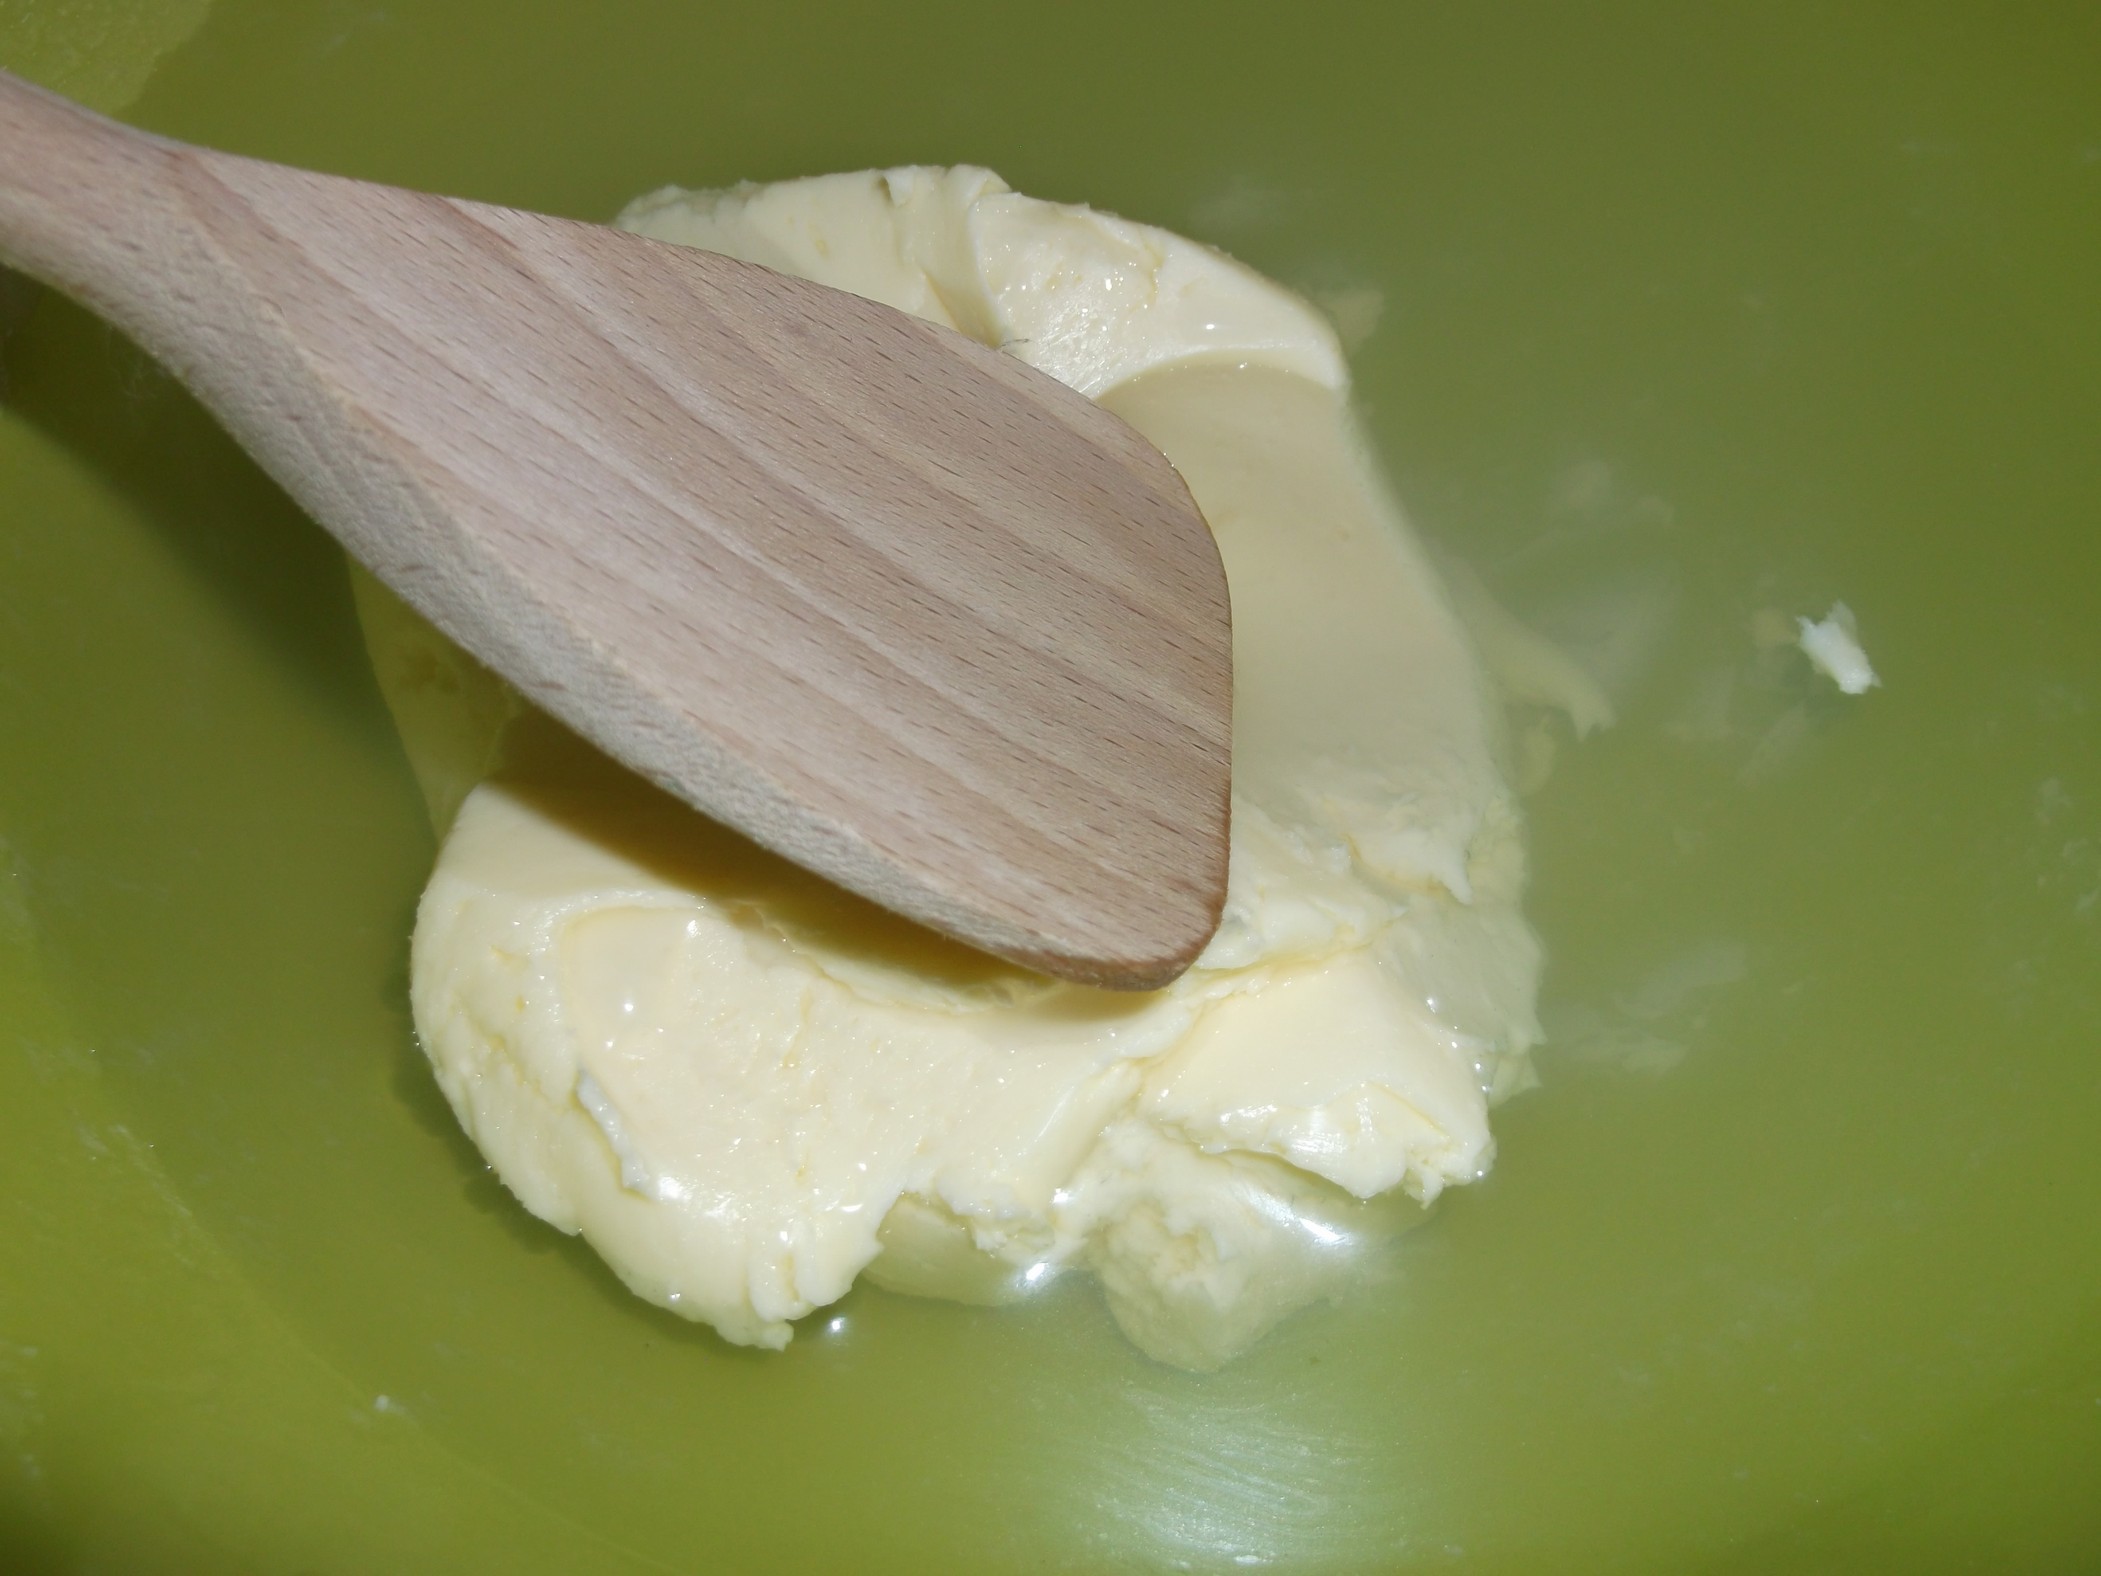 Domowe masło-jak zrobić.